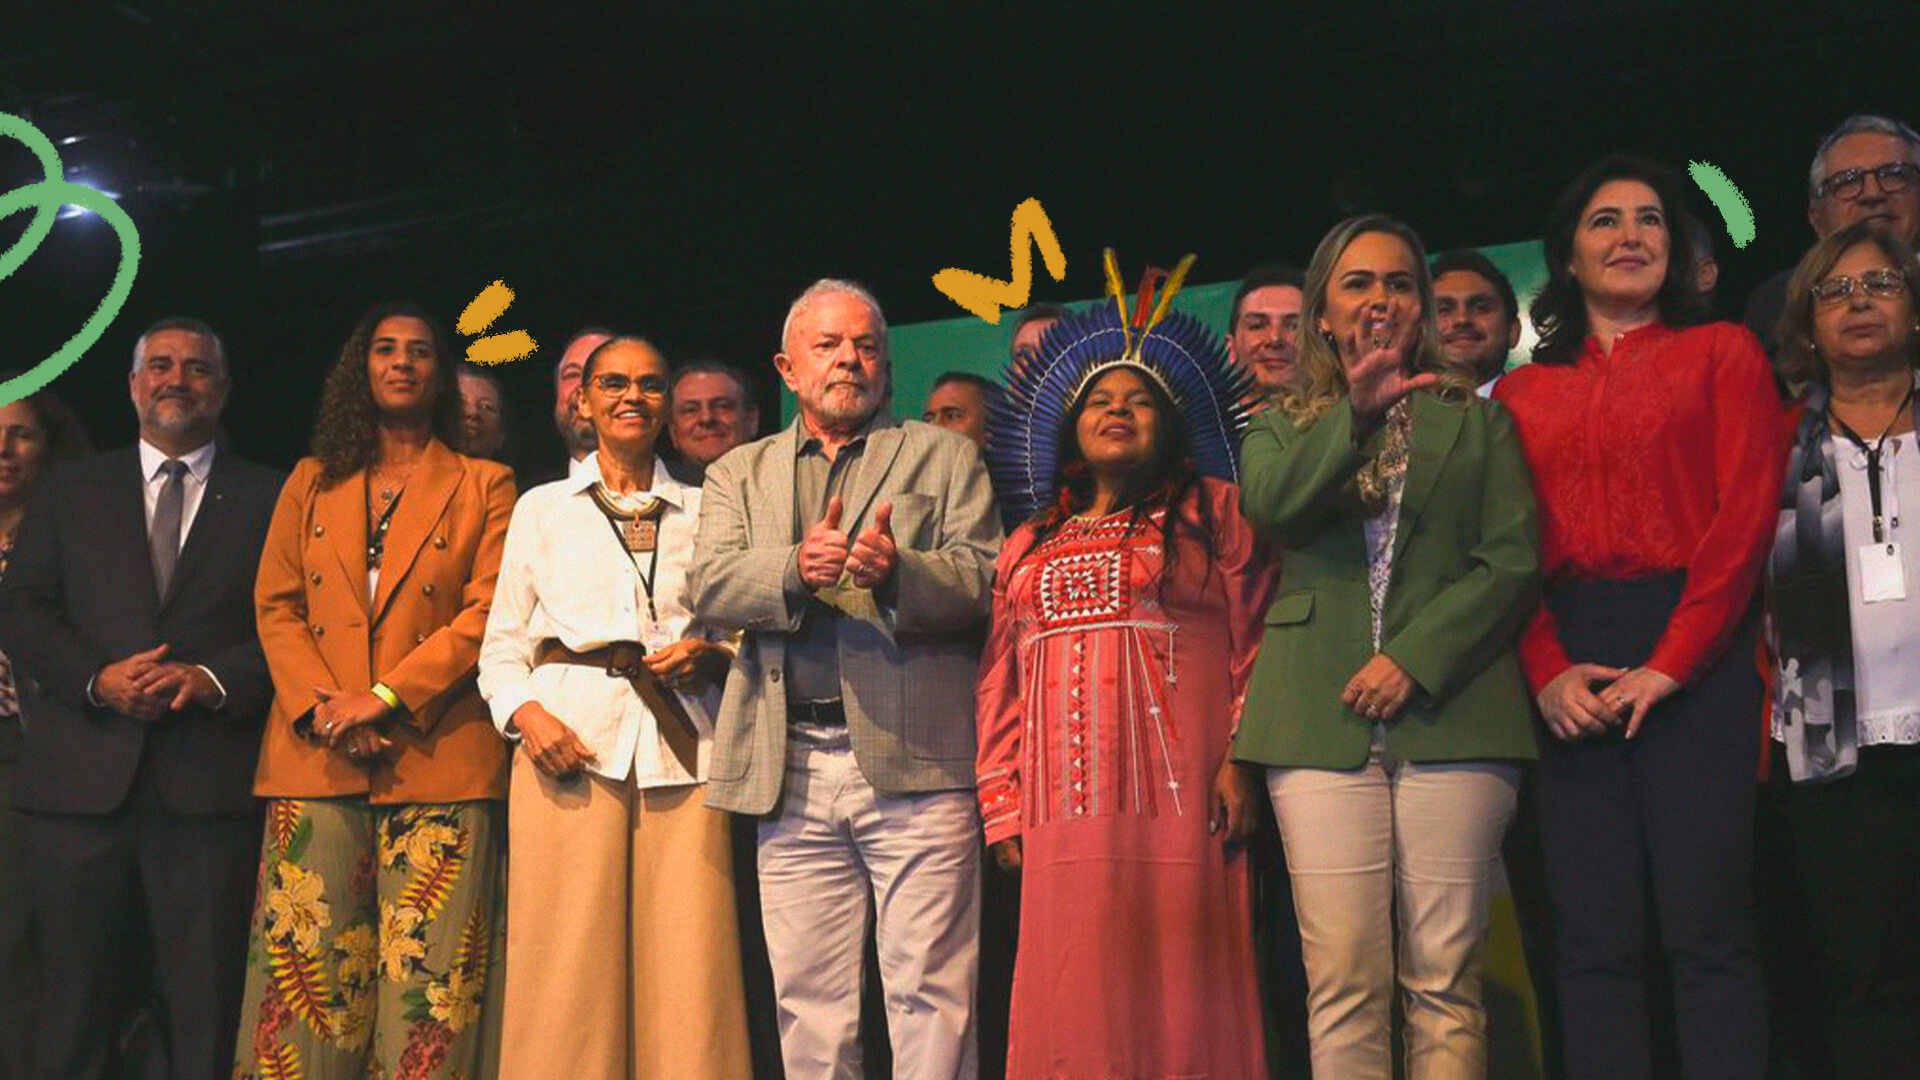 Imagem do presidente Luiz Inácio Lula da Silva, acompanhado de seus ministros e ministras - um grupo multi-étnico de homens e mulheres. A imagem ilustra uma matéria sobre discursos de posse.